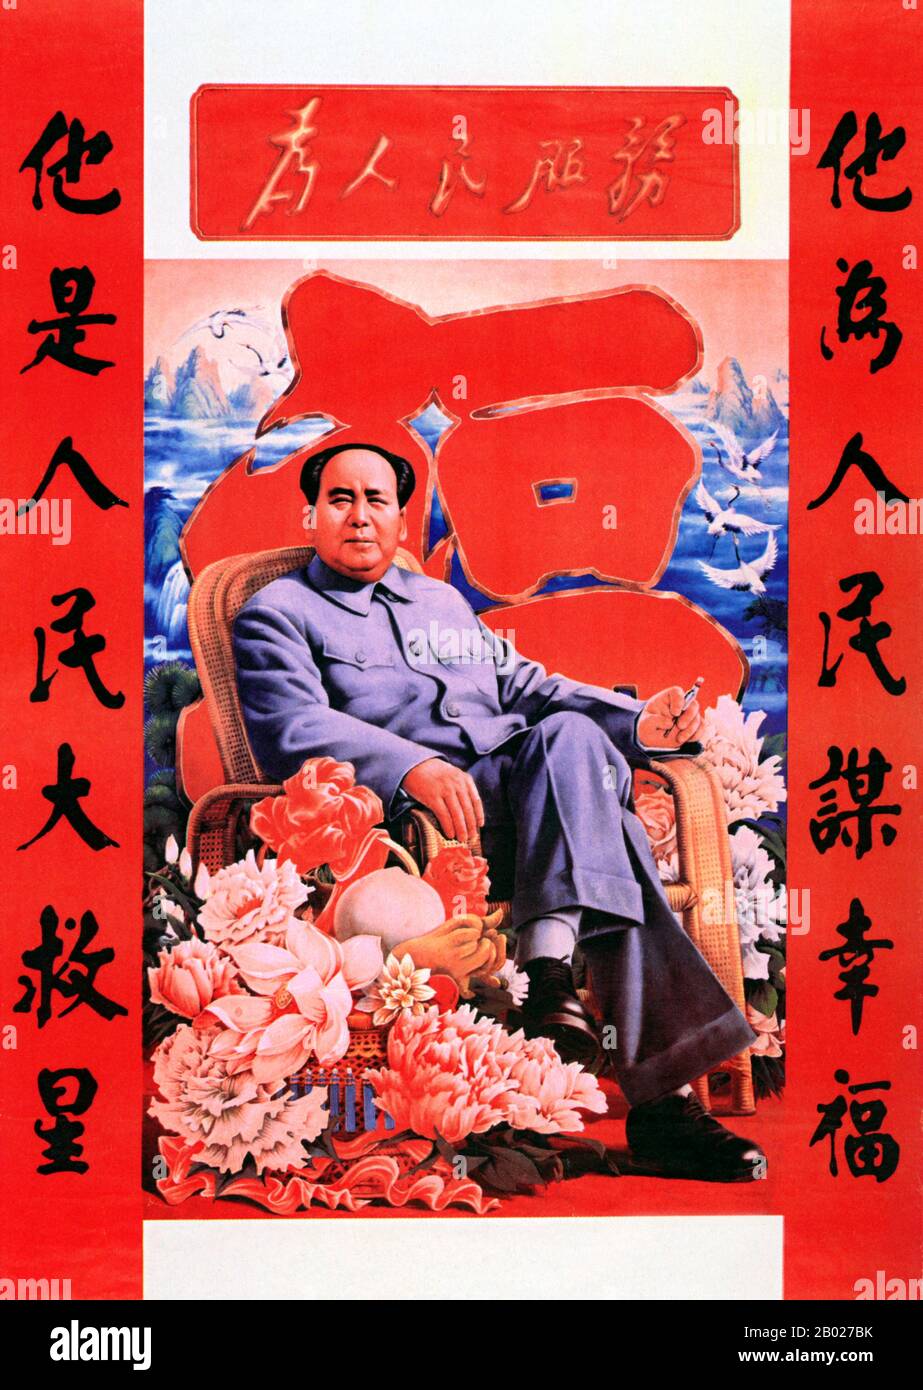 Mao Zedong, auch als Mao Tse-tung (26. Dezember 1893 - 9. September 1976) transliteriert, war ein chinesischer kommunistischer Revolutionär, Guerilla-Kampfstratege, Autor, politischer Theoretiker und Führer der chinesischen Revolution. Er wurde im Allgemeinen als Chairman Mao bezeichnet und war der Architekt der Volksrepublik China (PRC) von ihrer Gründung im Jahr 1949 an und hatte bis zu seinem Tod im Jahr 1976 die autoritäre Kontrolle über die Nation inne. Sein theoretischer Beitrag zum Marxismus-Leninismus, zusammen mit seinen militärischen Strategien und der Marke der politischen Politik, werden heute kollektiv als Maoismus bezeichnet. Stockfoto